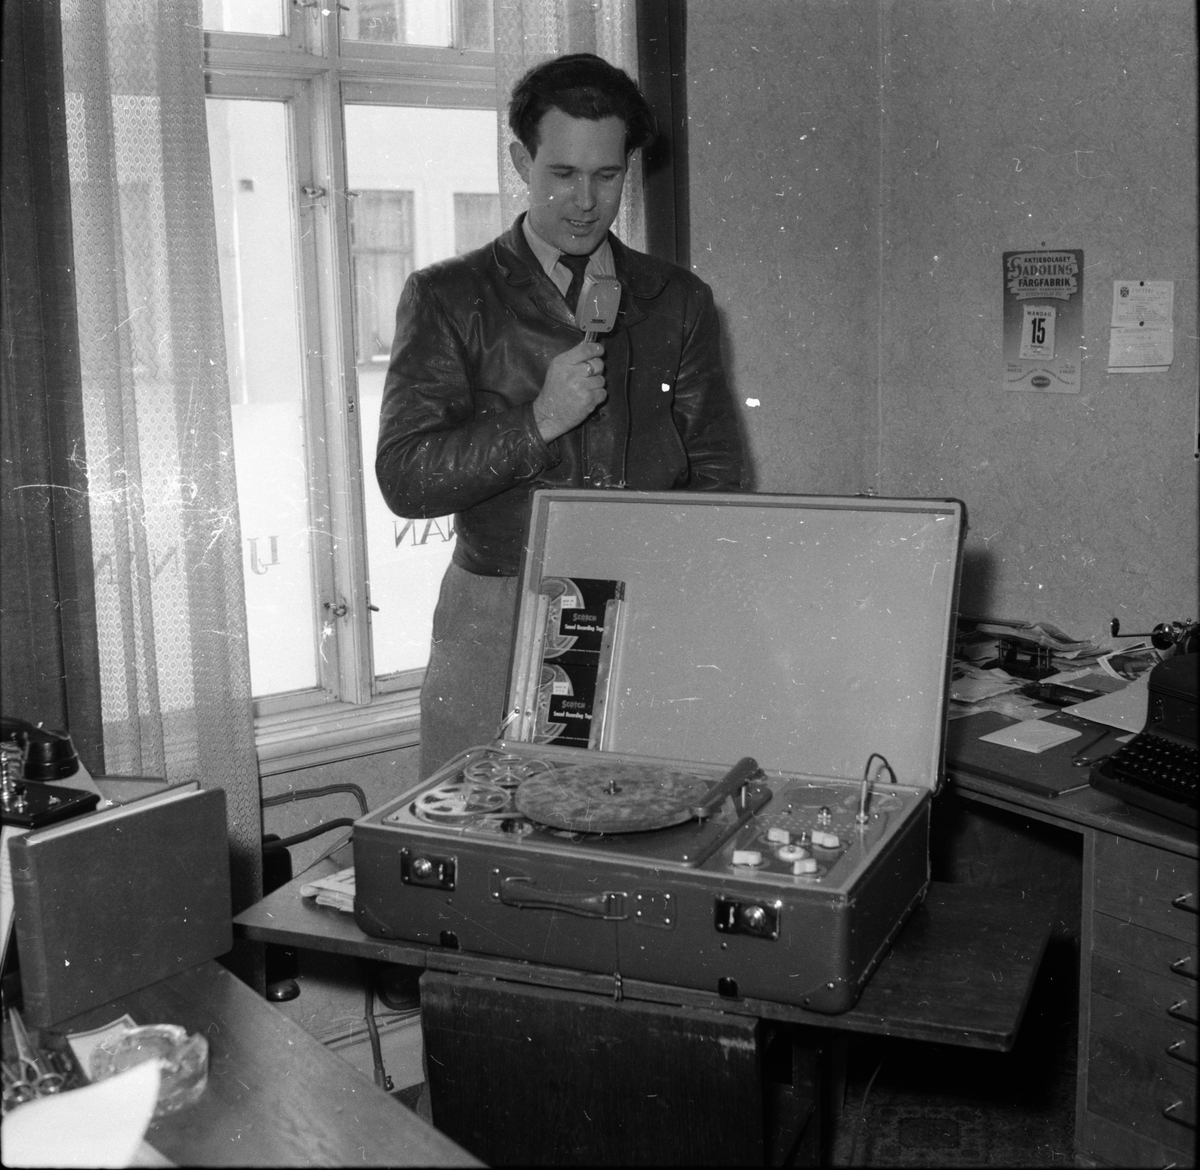 Bertil Åsberg. Teleradio.
1955